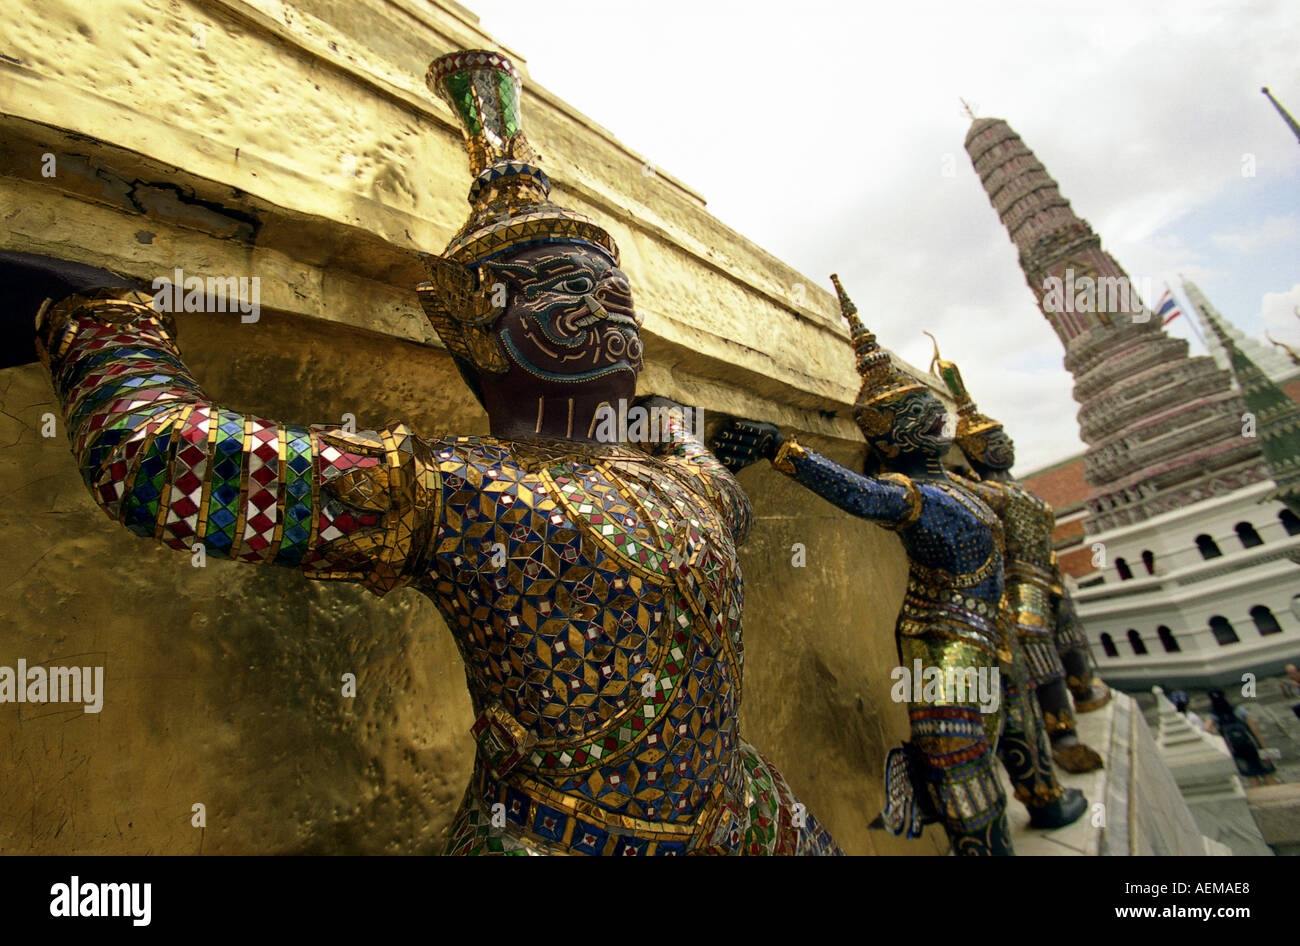 statues at the grand palace in bangkok thailand Stock Photo